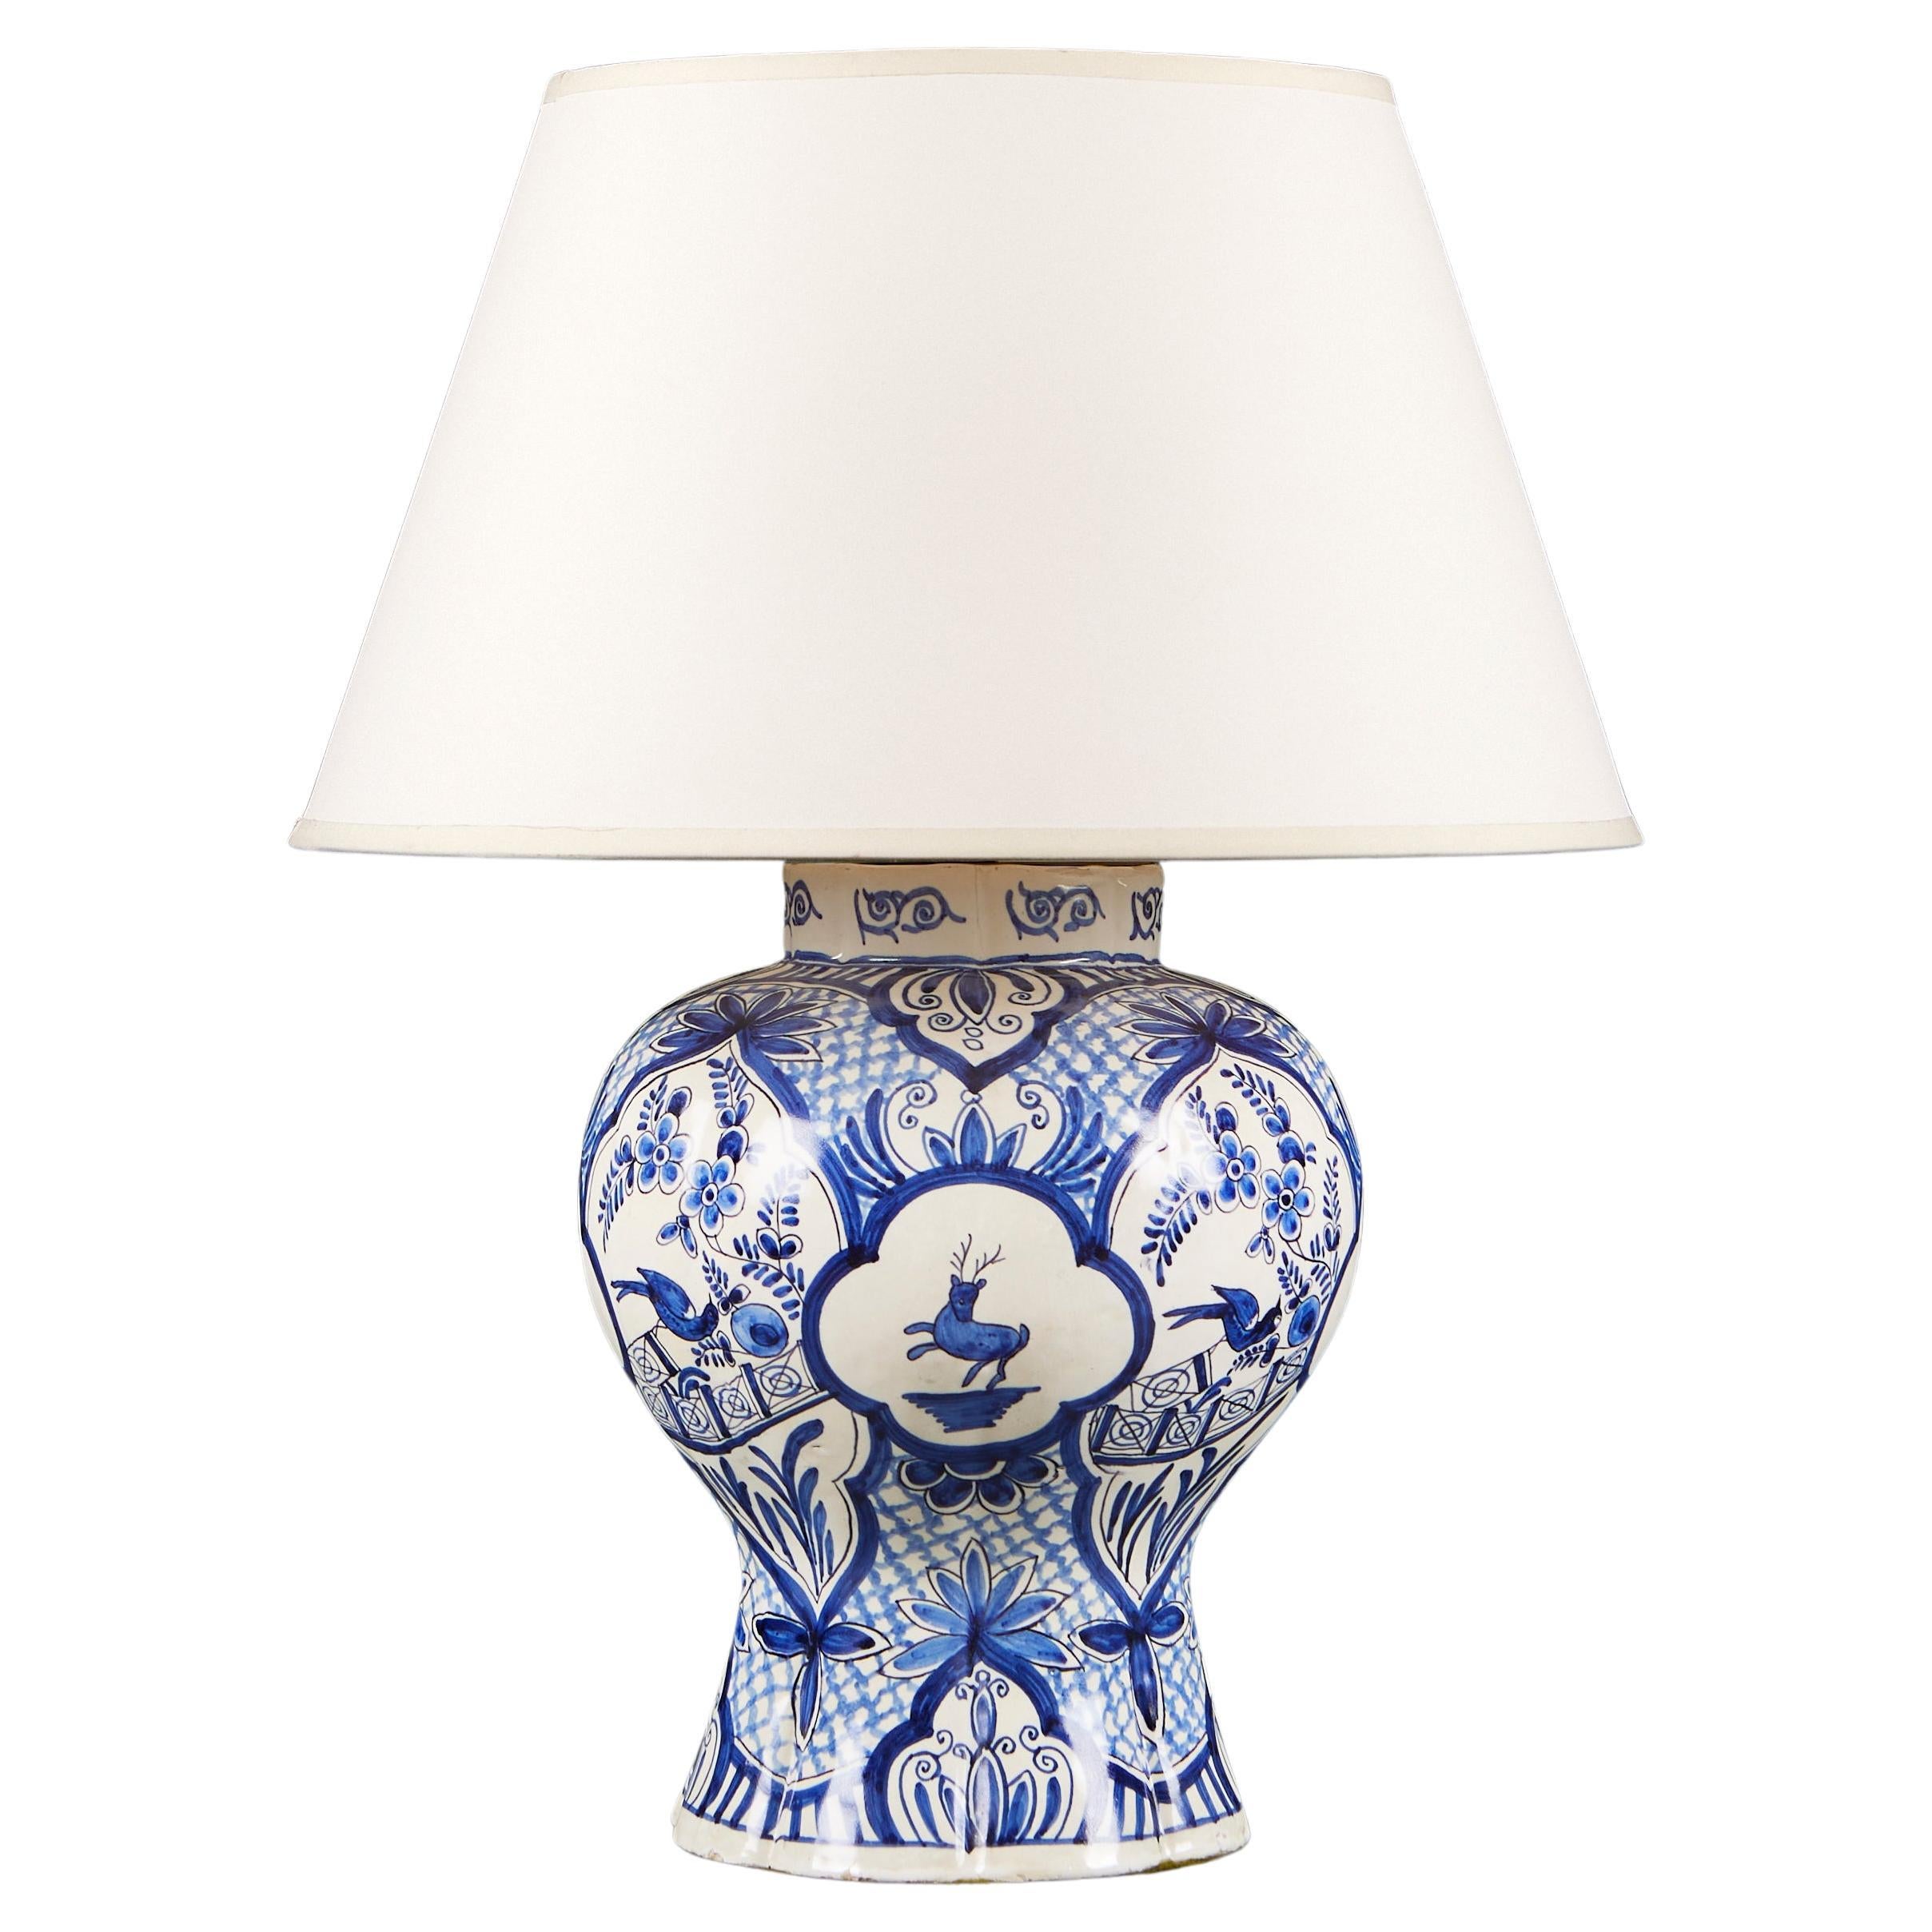 Vase de Delft bleu et blanc comme lampe